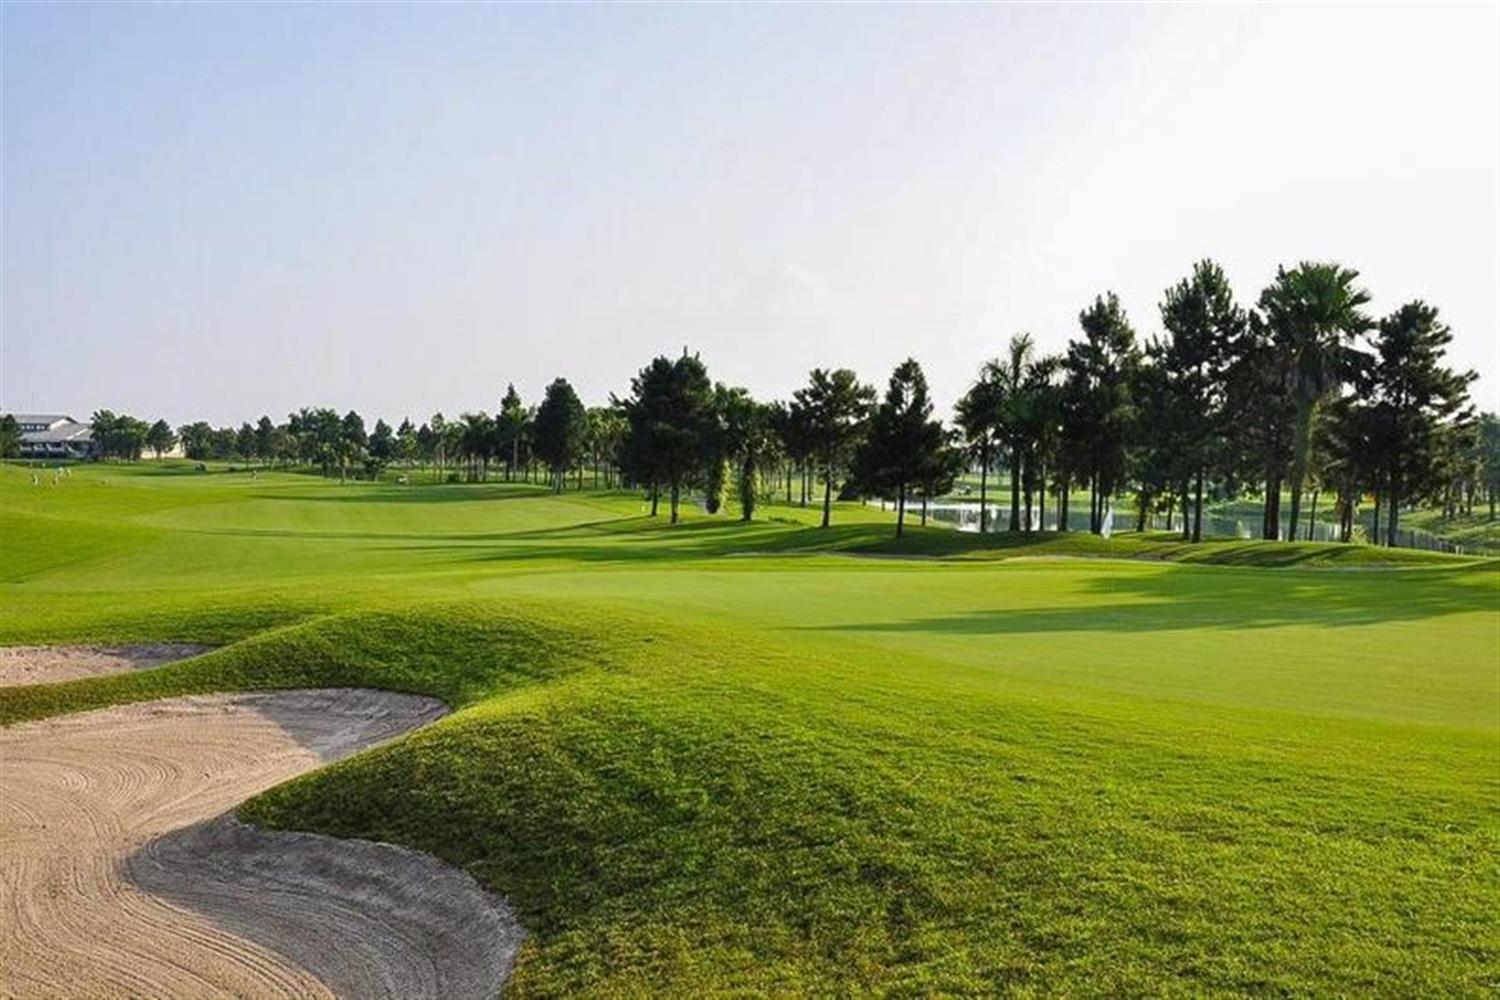 Sân golf Đầm Vạc sẽ diễn ra thi đấu môn Golf tại SEA Games 31